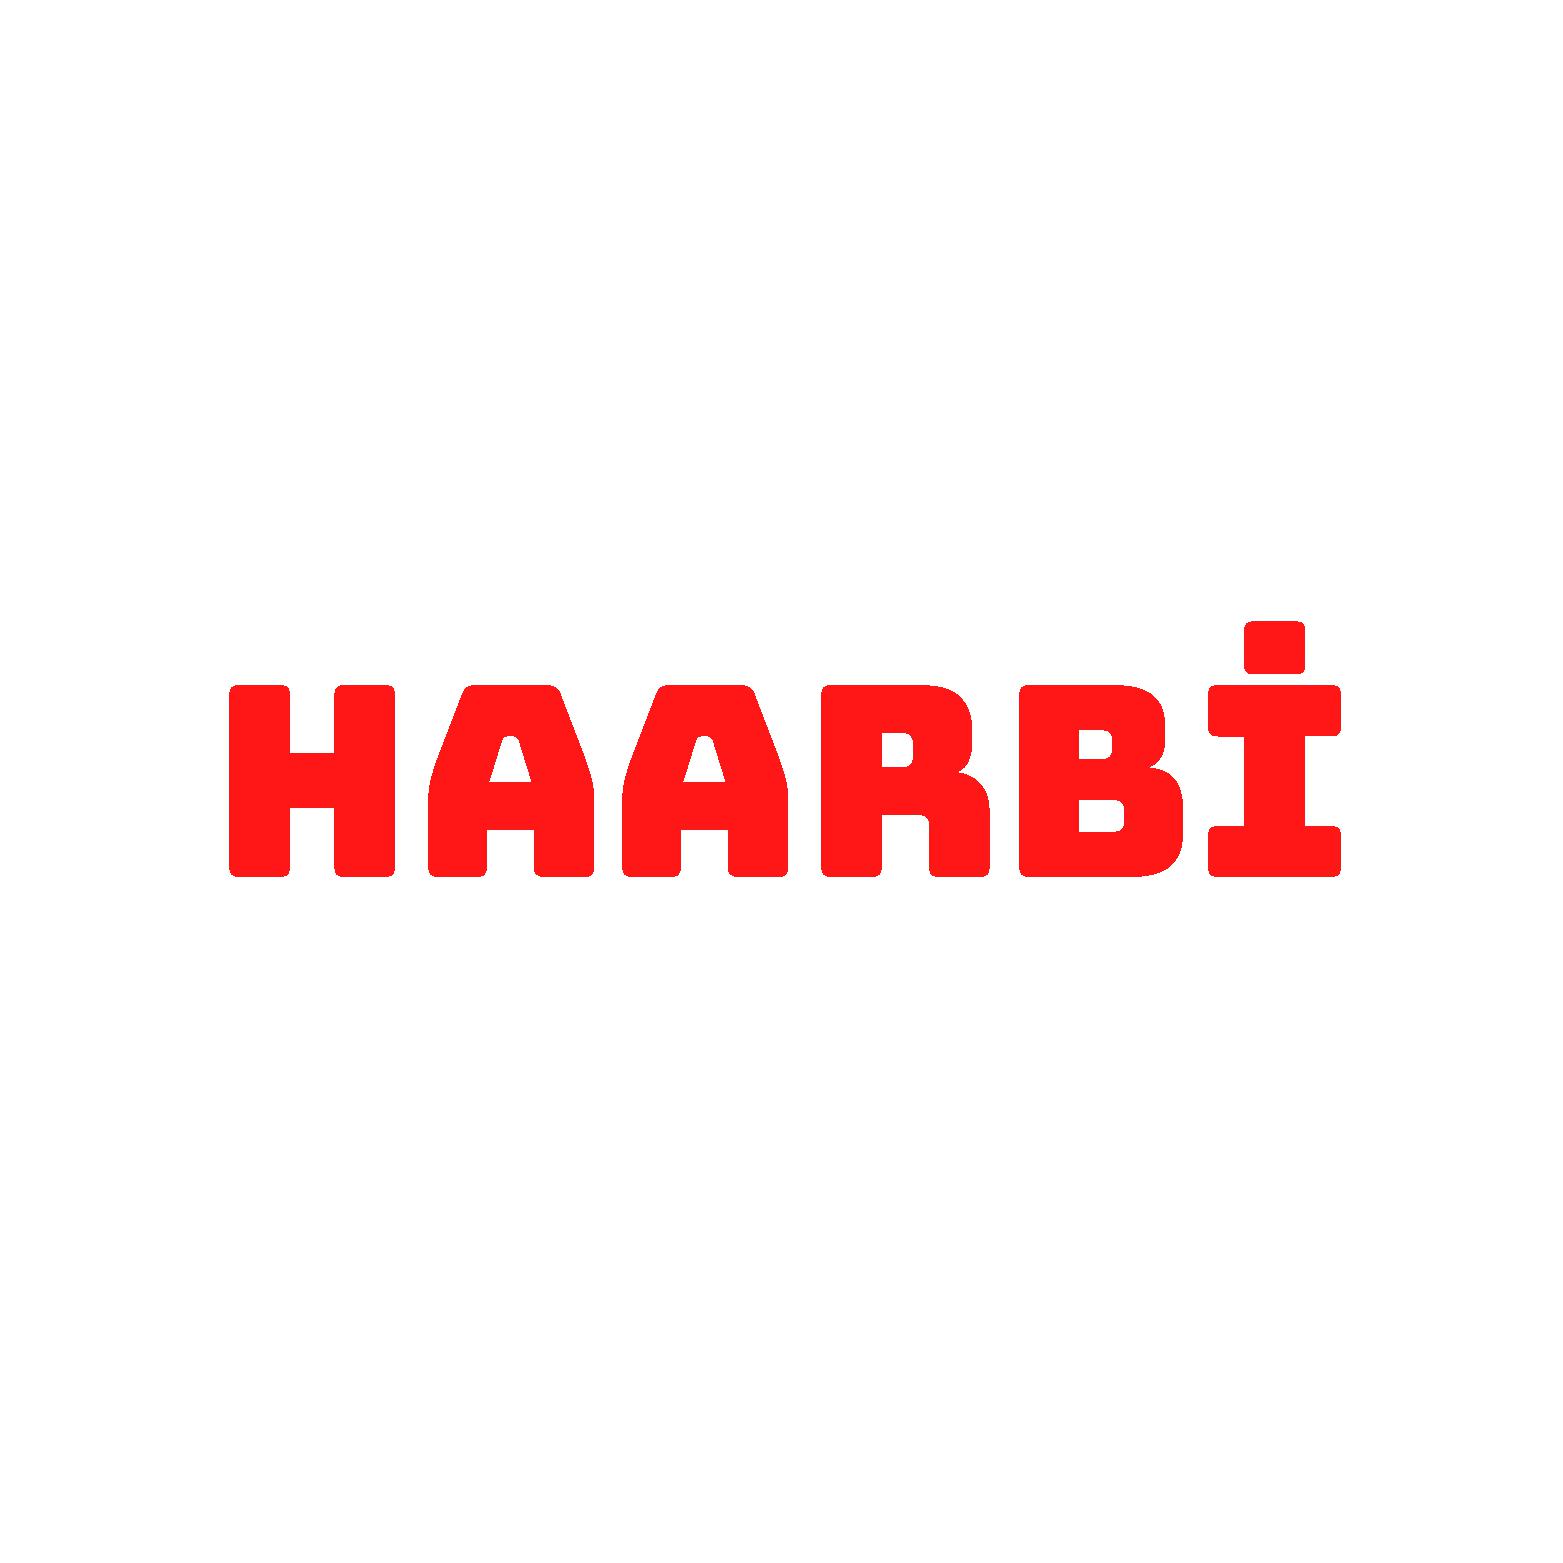    Haarbi
